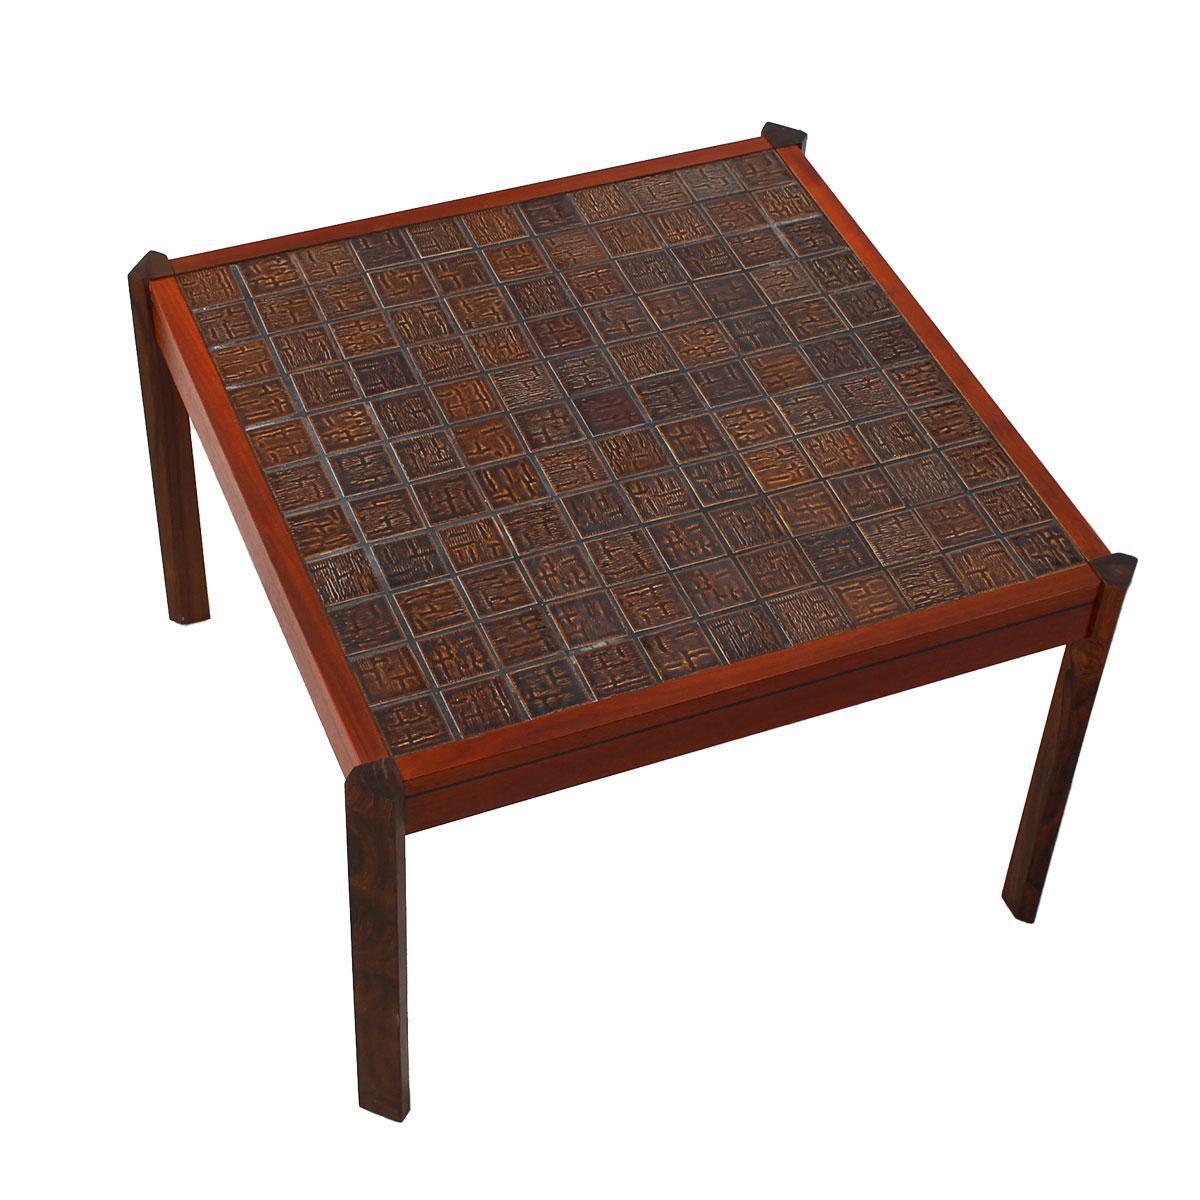 Hier ist ein interessanter Danish Modern Tisch. Der Rahmen ist hell mit kontrastierenden dunkleren Beinen. Die Tischplatte ist mit Fliesen in verschiedenen Rotbraun-Tönen bedeckt, die die beiden Holztöne perfekt miteinander verbinden. Die Fliese ist